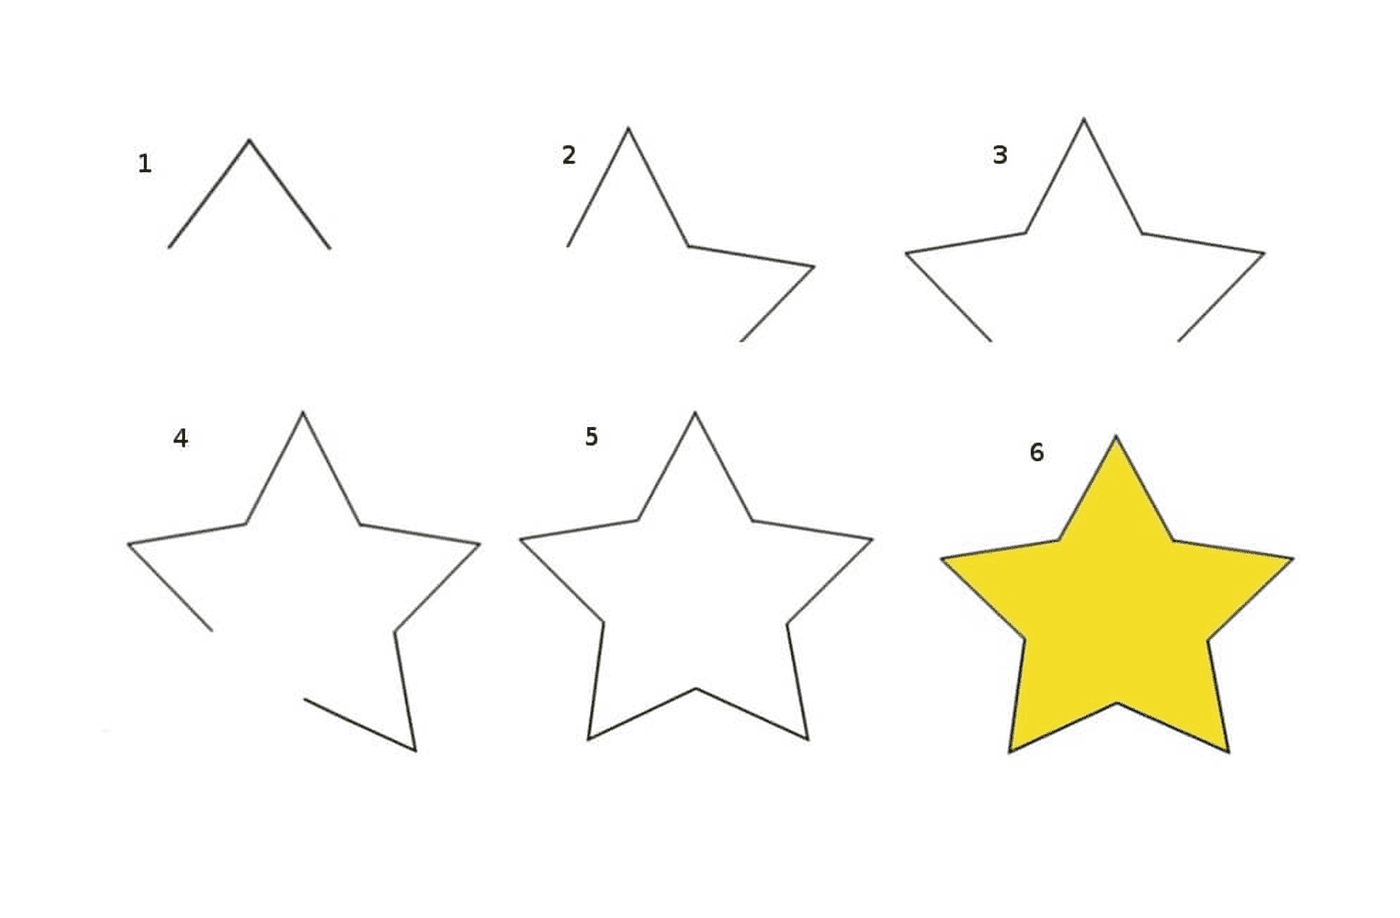  Fünf verschiedene Formen gelber Sterne 